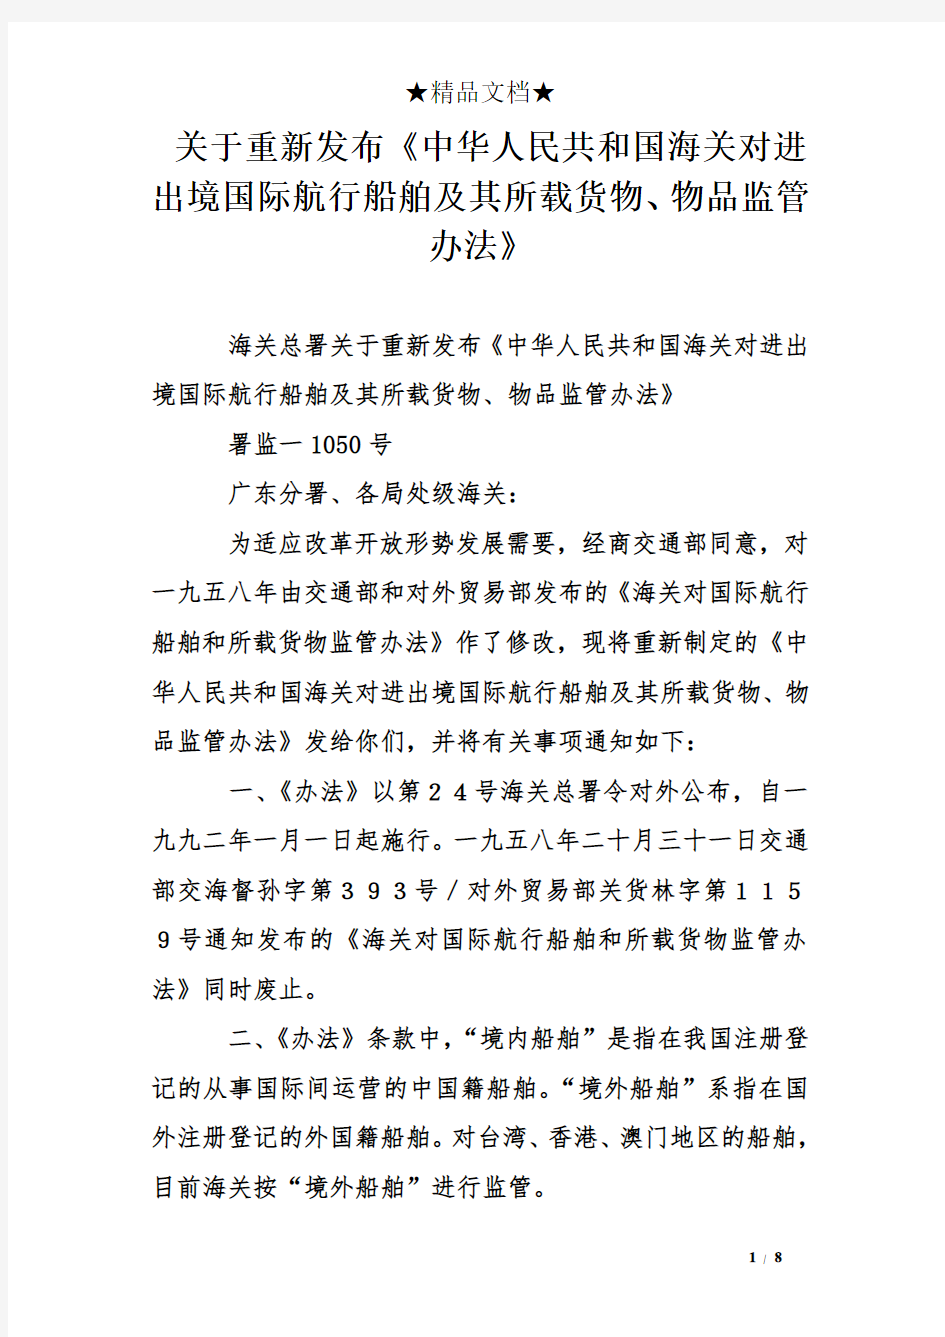 关于重新发布《中华人民共和国海关对进出境国际航行船舶及其所载货物、物品监管办法》